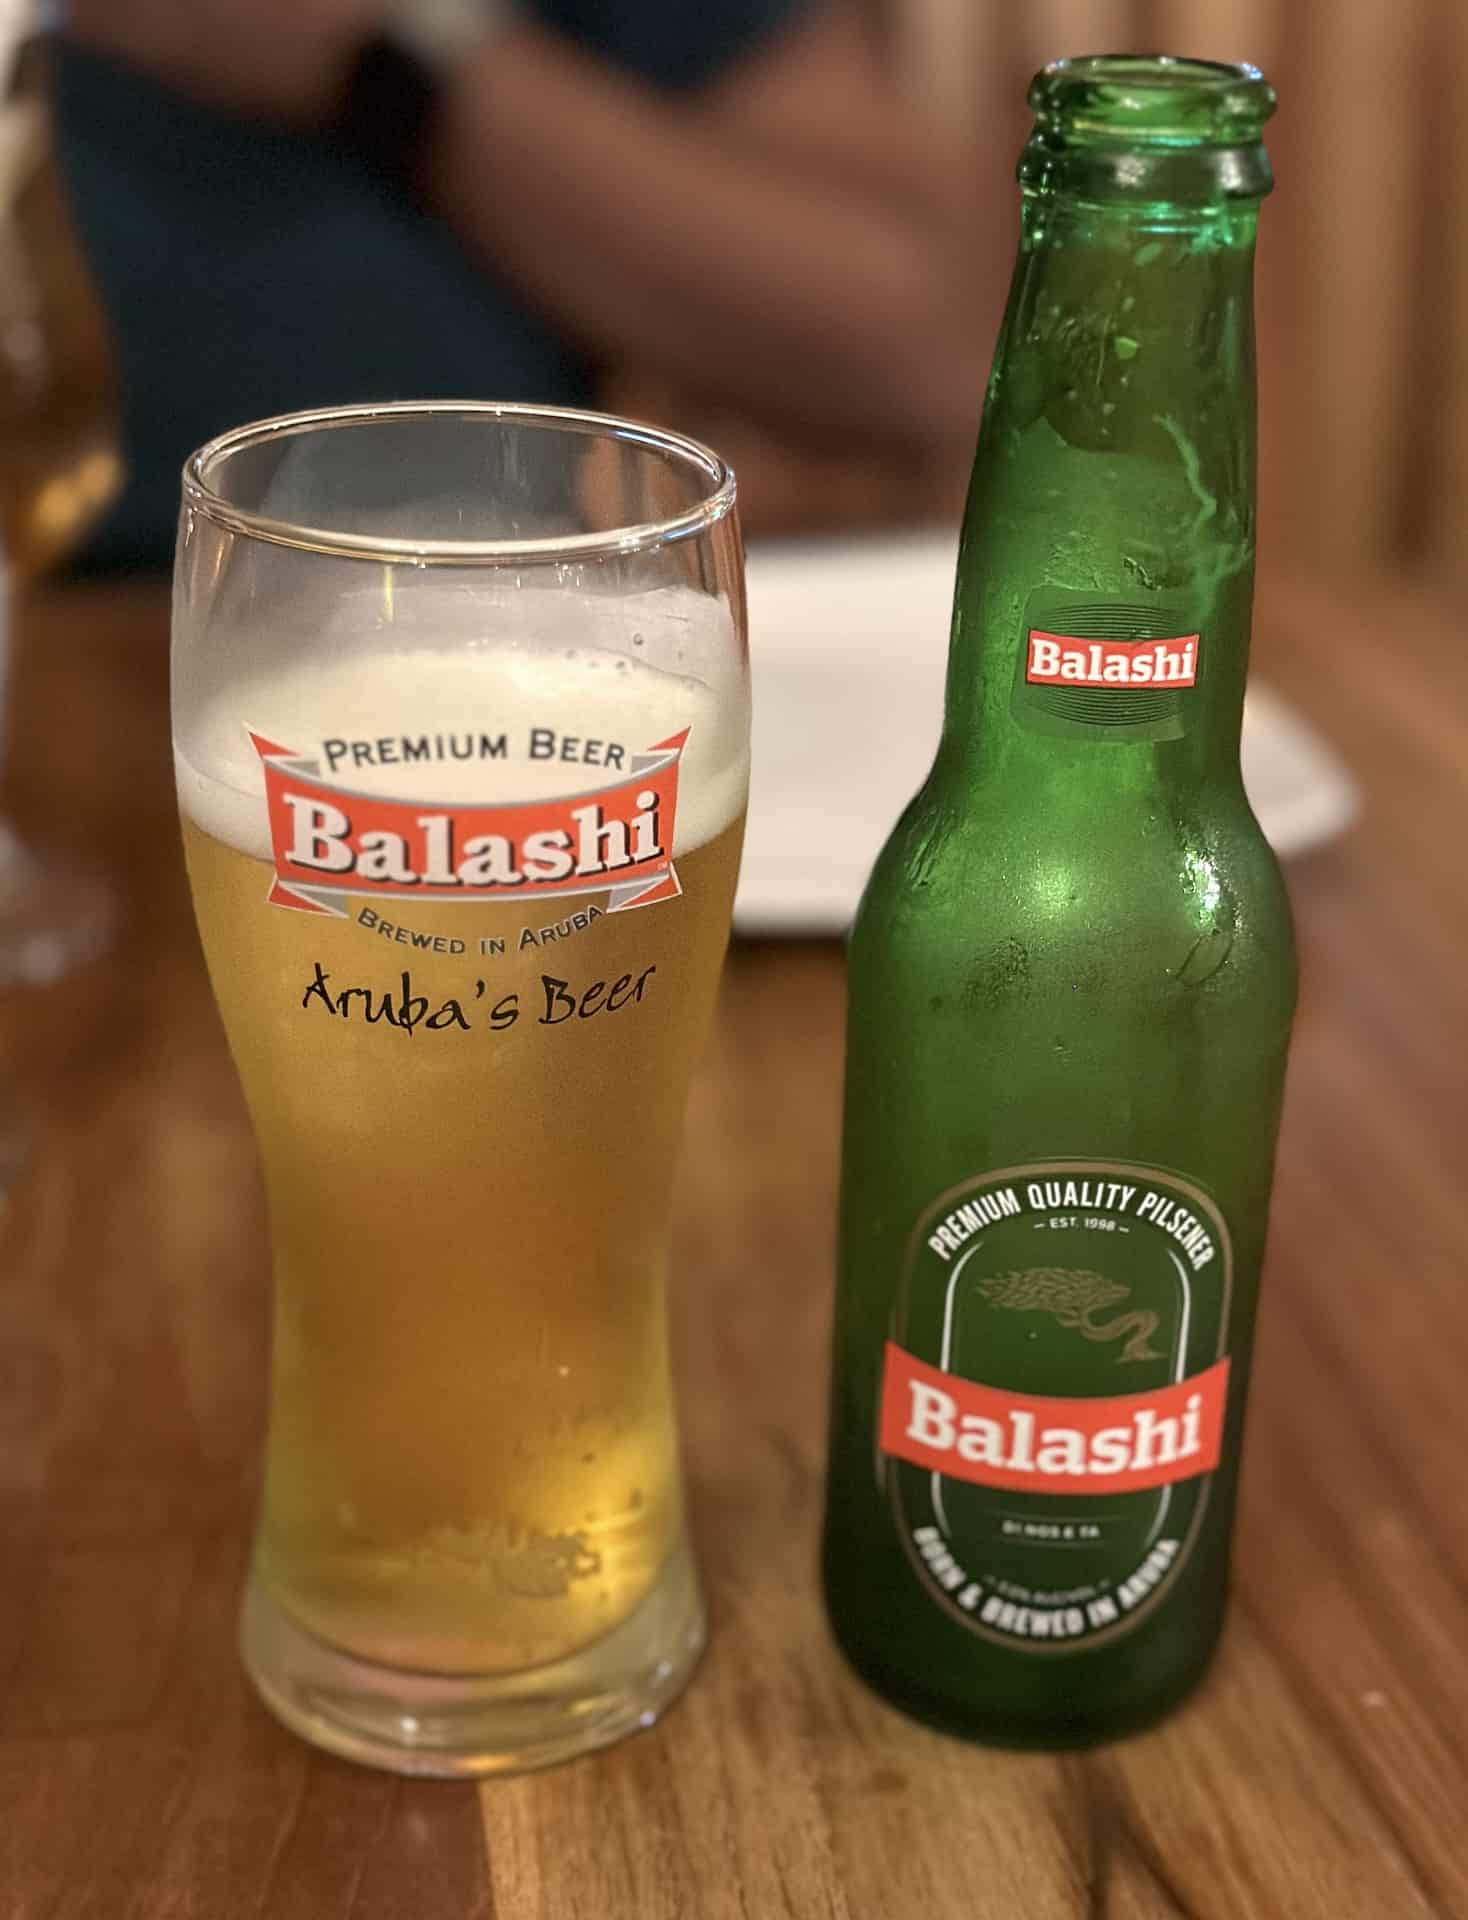 Balashi beer